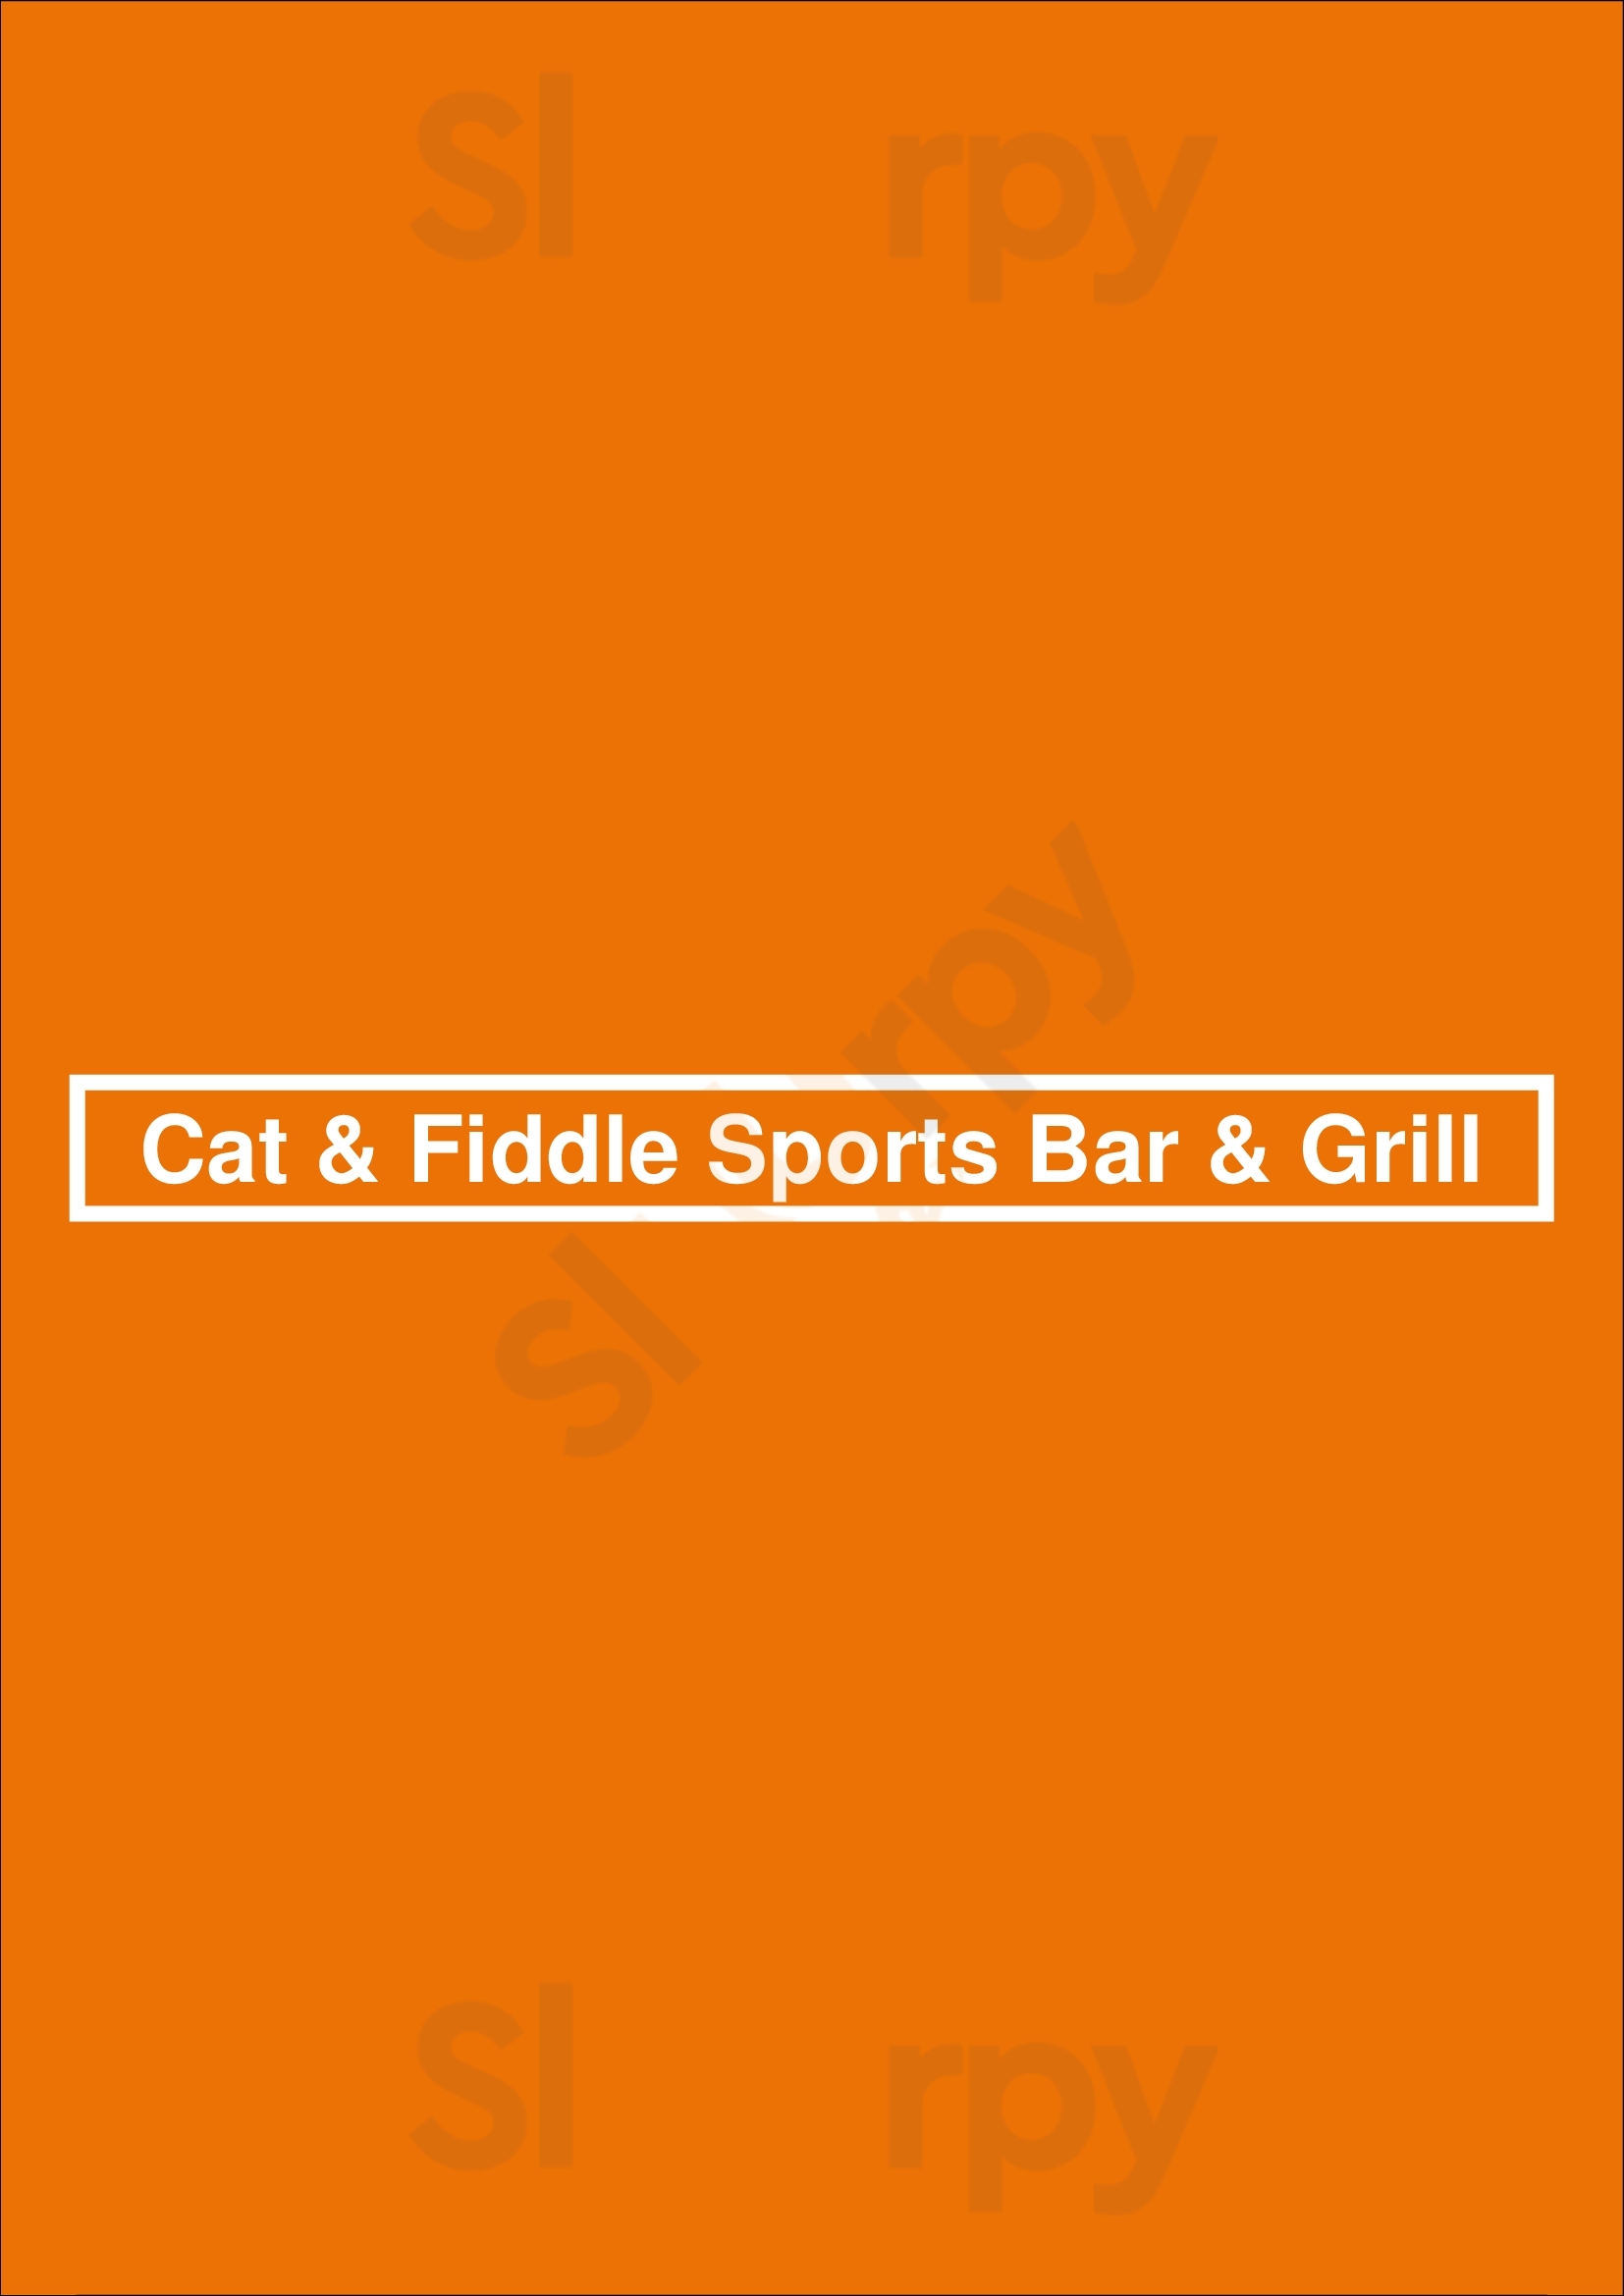 Cat & Fiddle Sports Bar & Grill Port Coquitlam Menu - 1